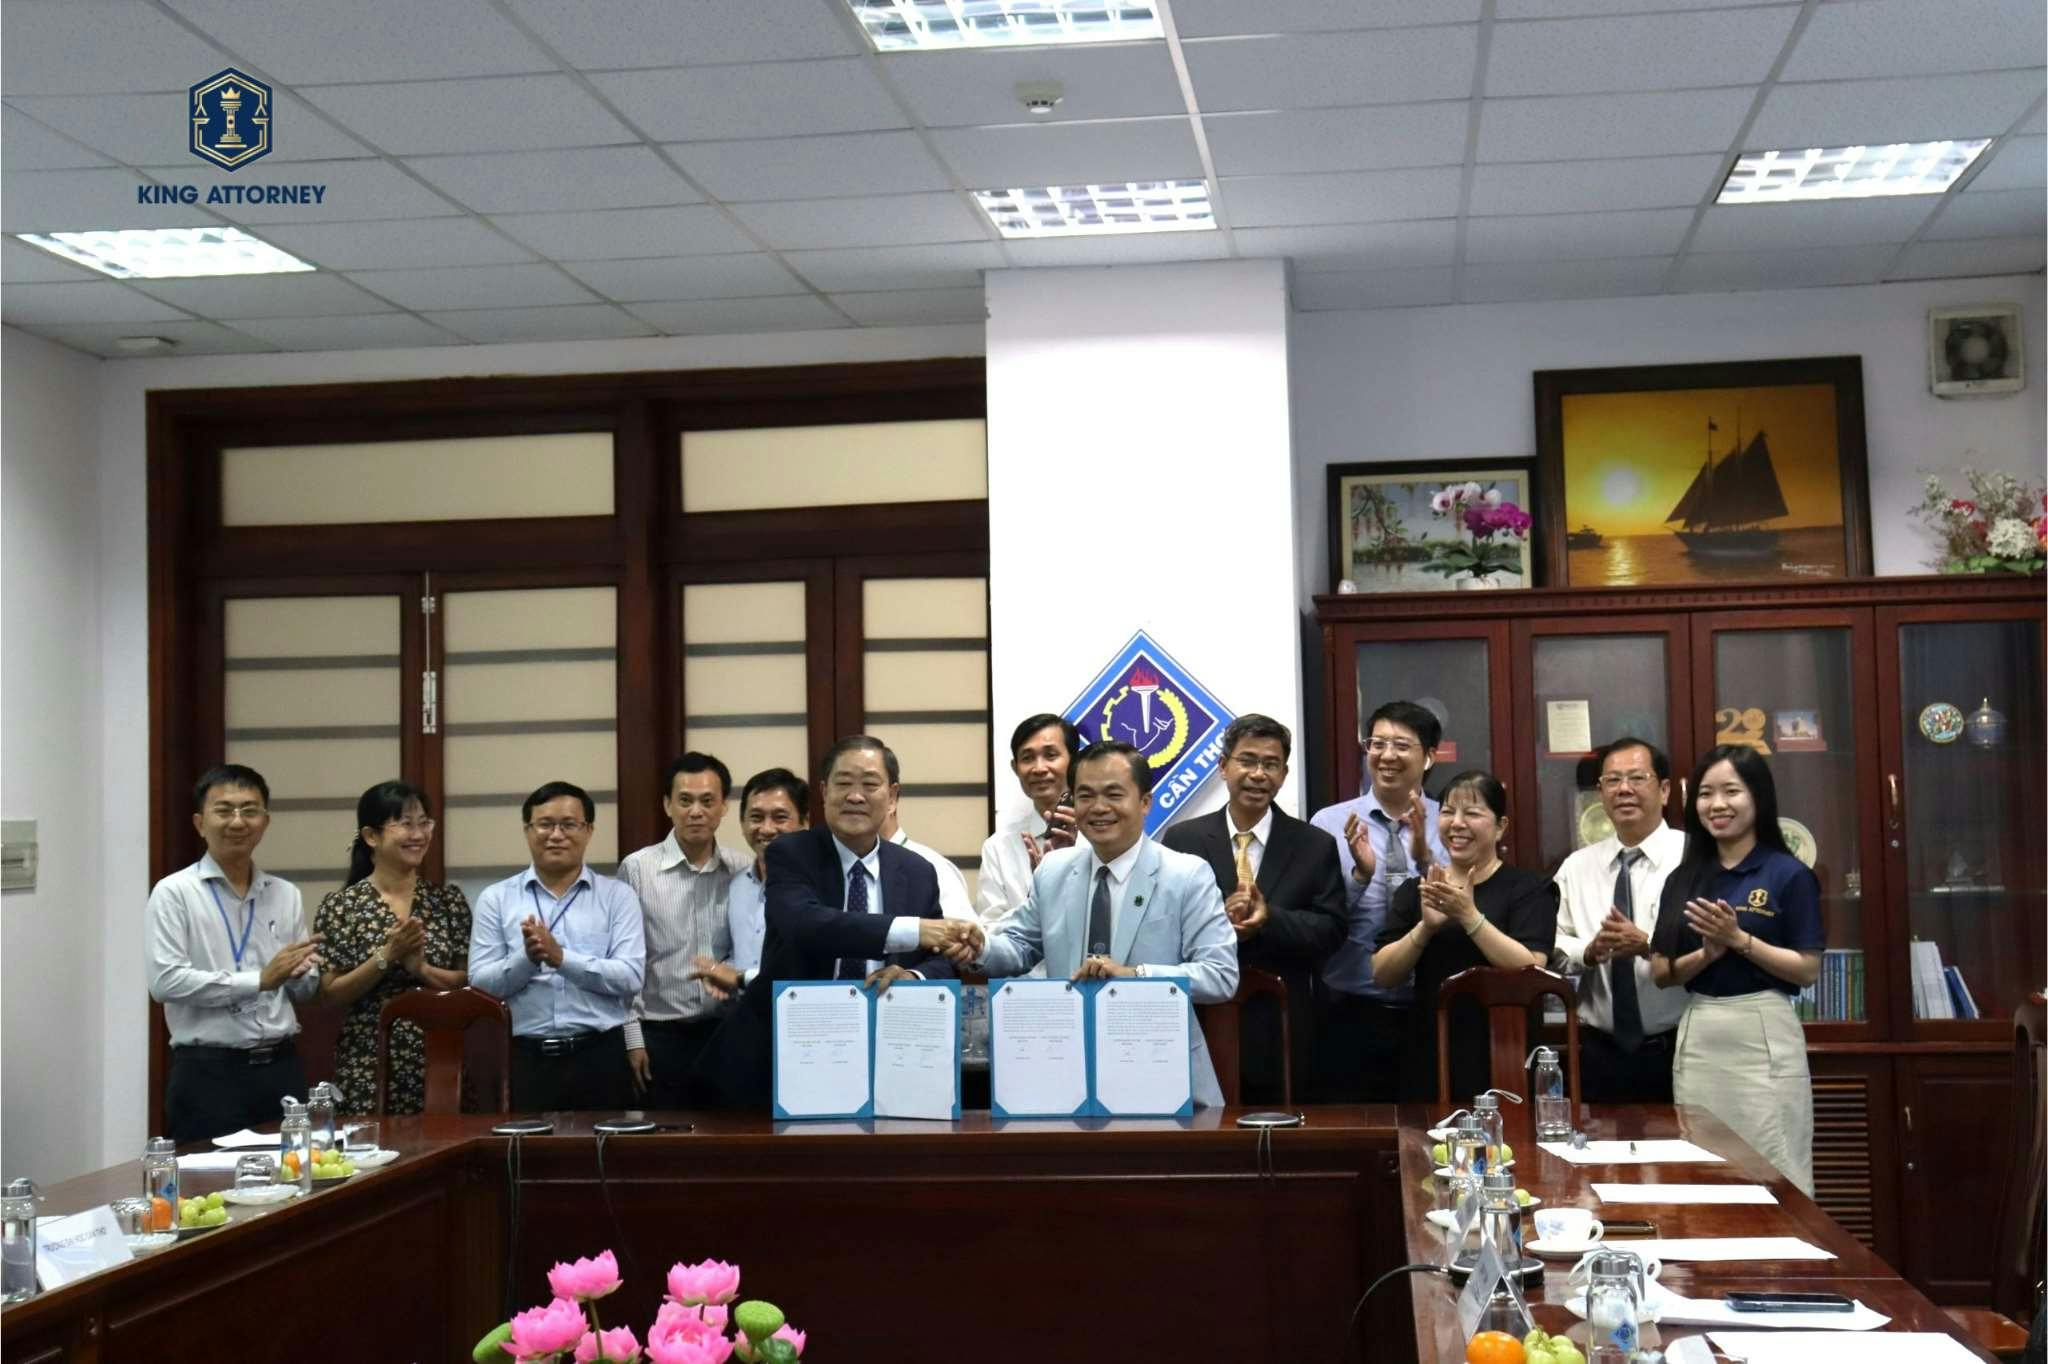 Lễ ký kết hợp tác giữa Công ty CP King Attorney, Công ty TNHH Novita An Bình và Đại học Cần Thơ